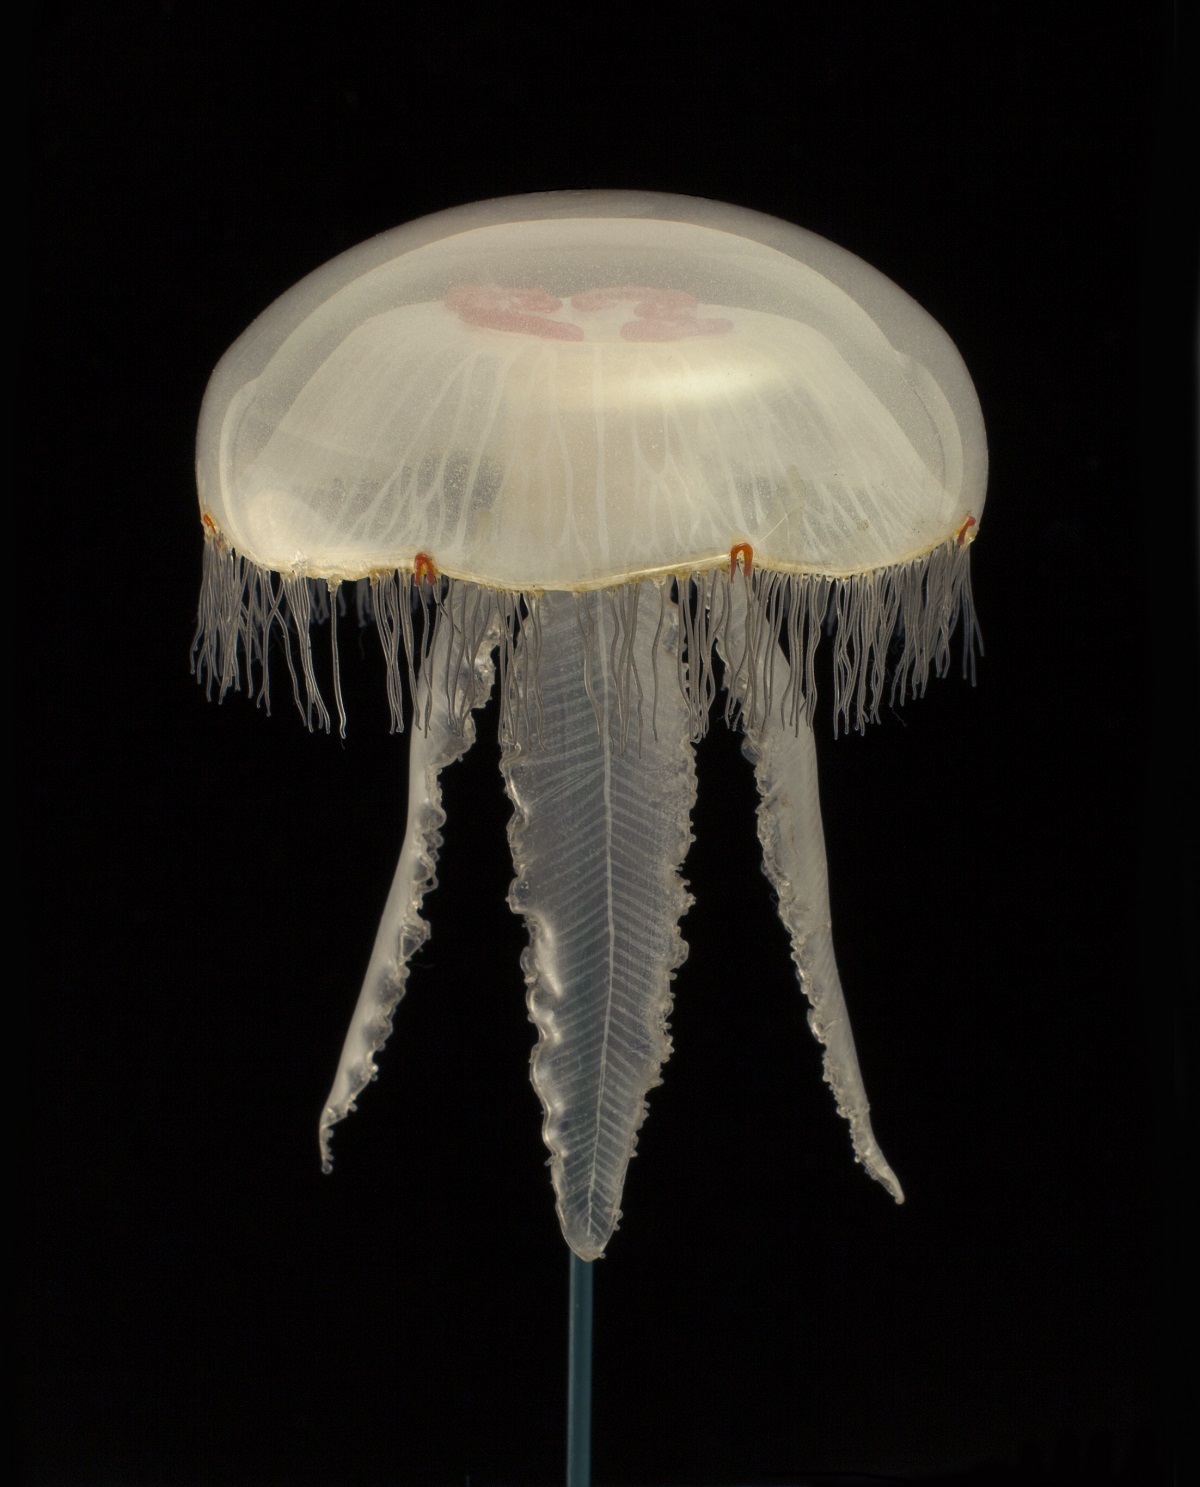 Moon jellyfish Aurelia aurita 1884.137.32